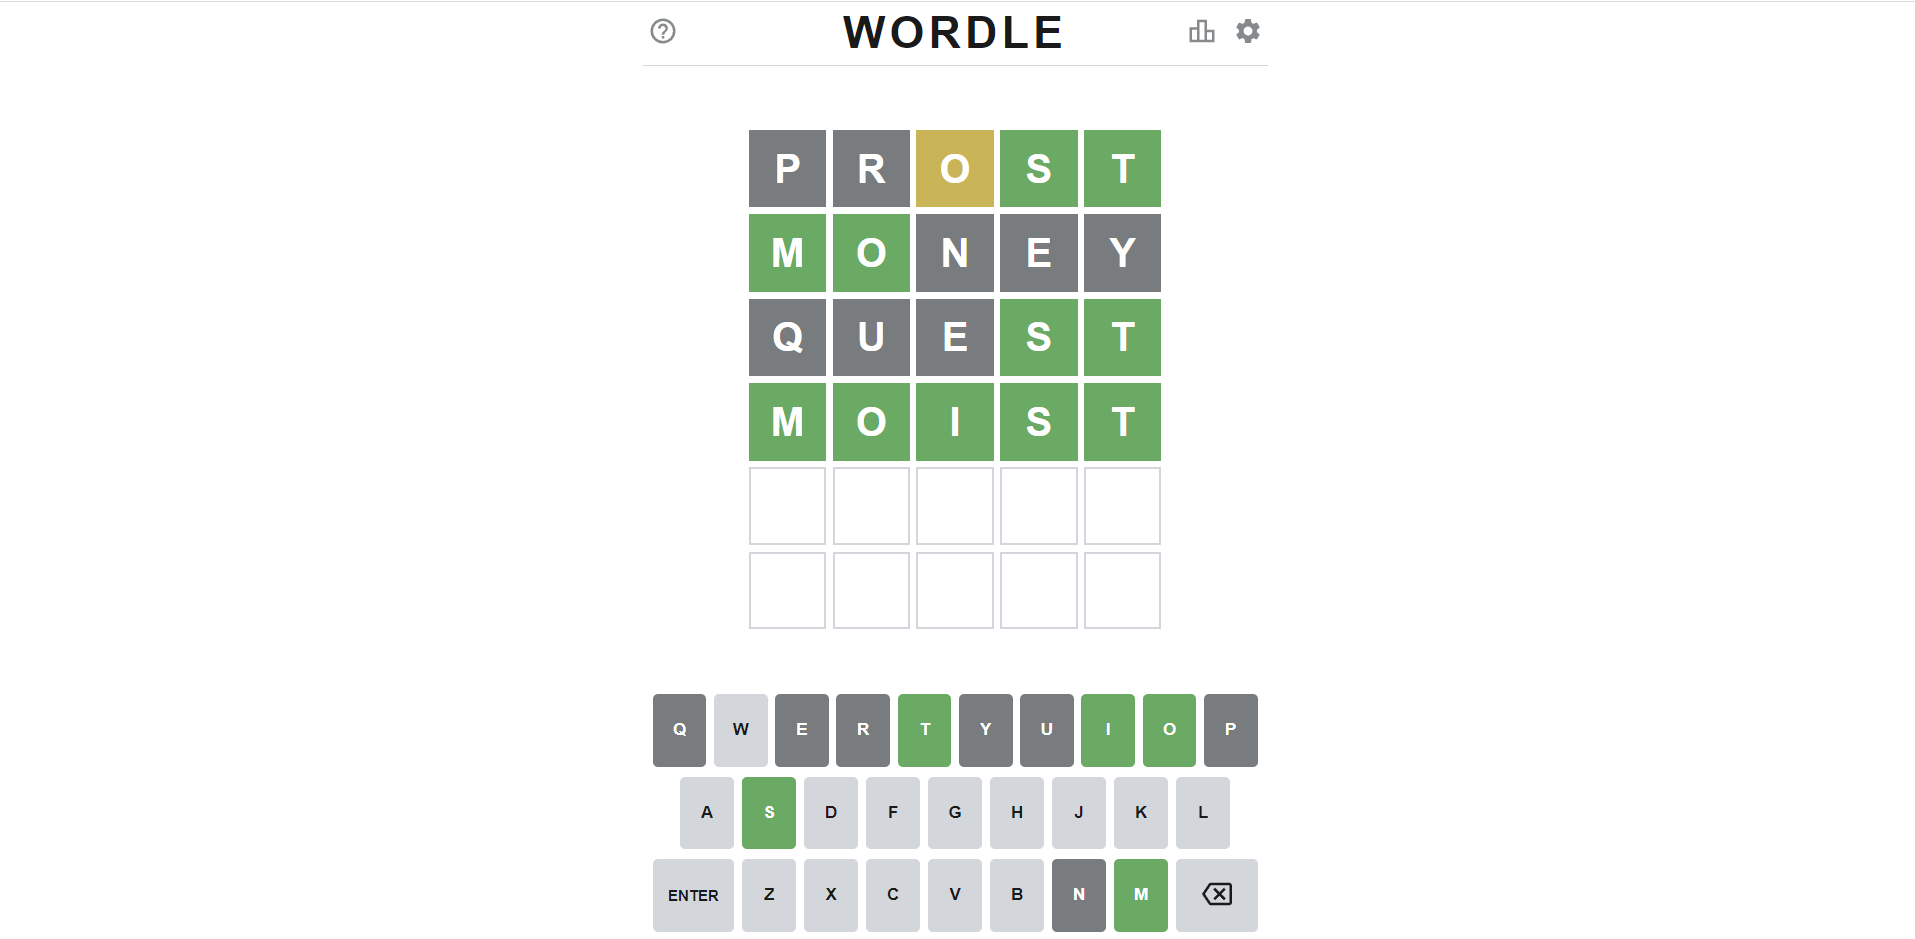 นิวยอร์กไทม์ เข้าซื้อเกมฮิตทายศัพท์ “Wordle” ด้วยเงิน 7 หลักแล้ว!